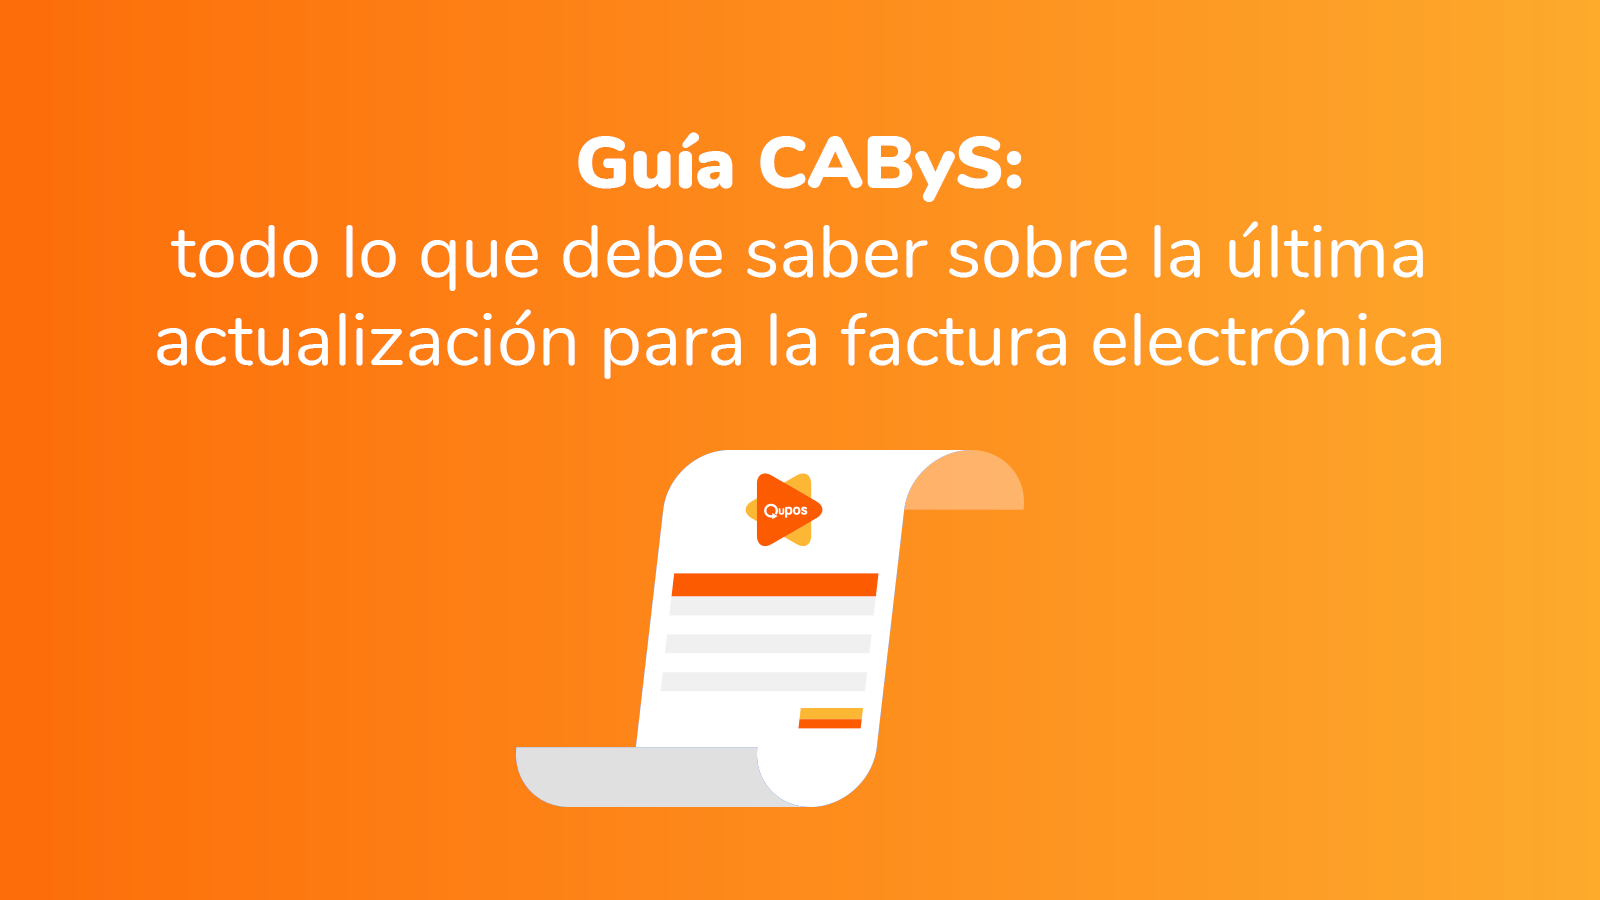 Guía CAByS Costa Rica: todo lo que debe saber sobre la nueva actualización de Hacienda para la factura electrónica - Qupos